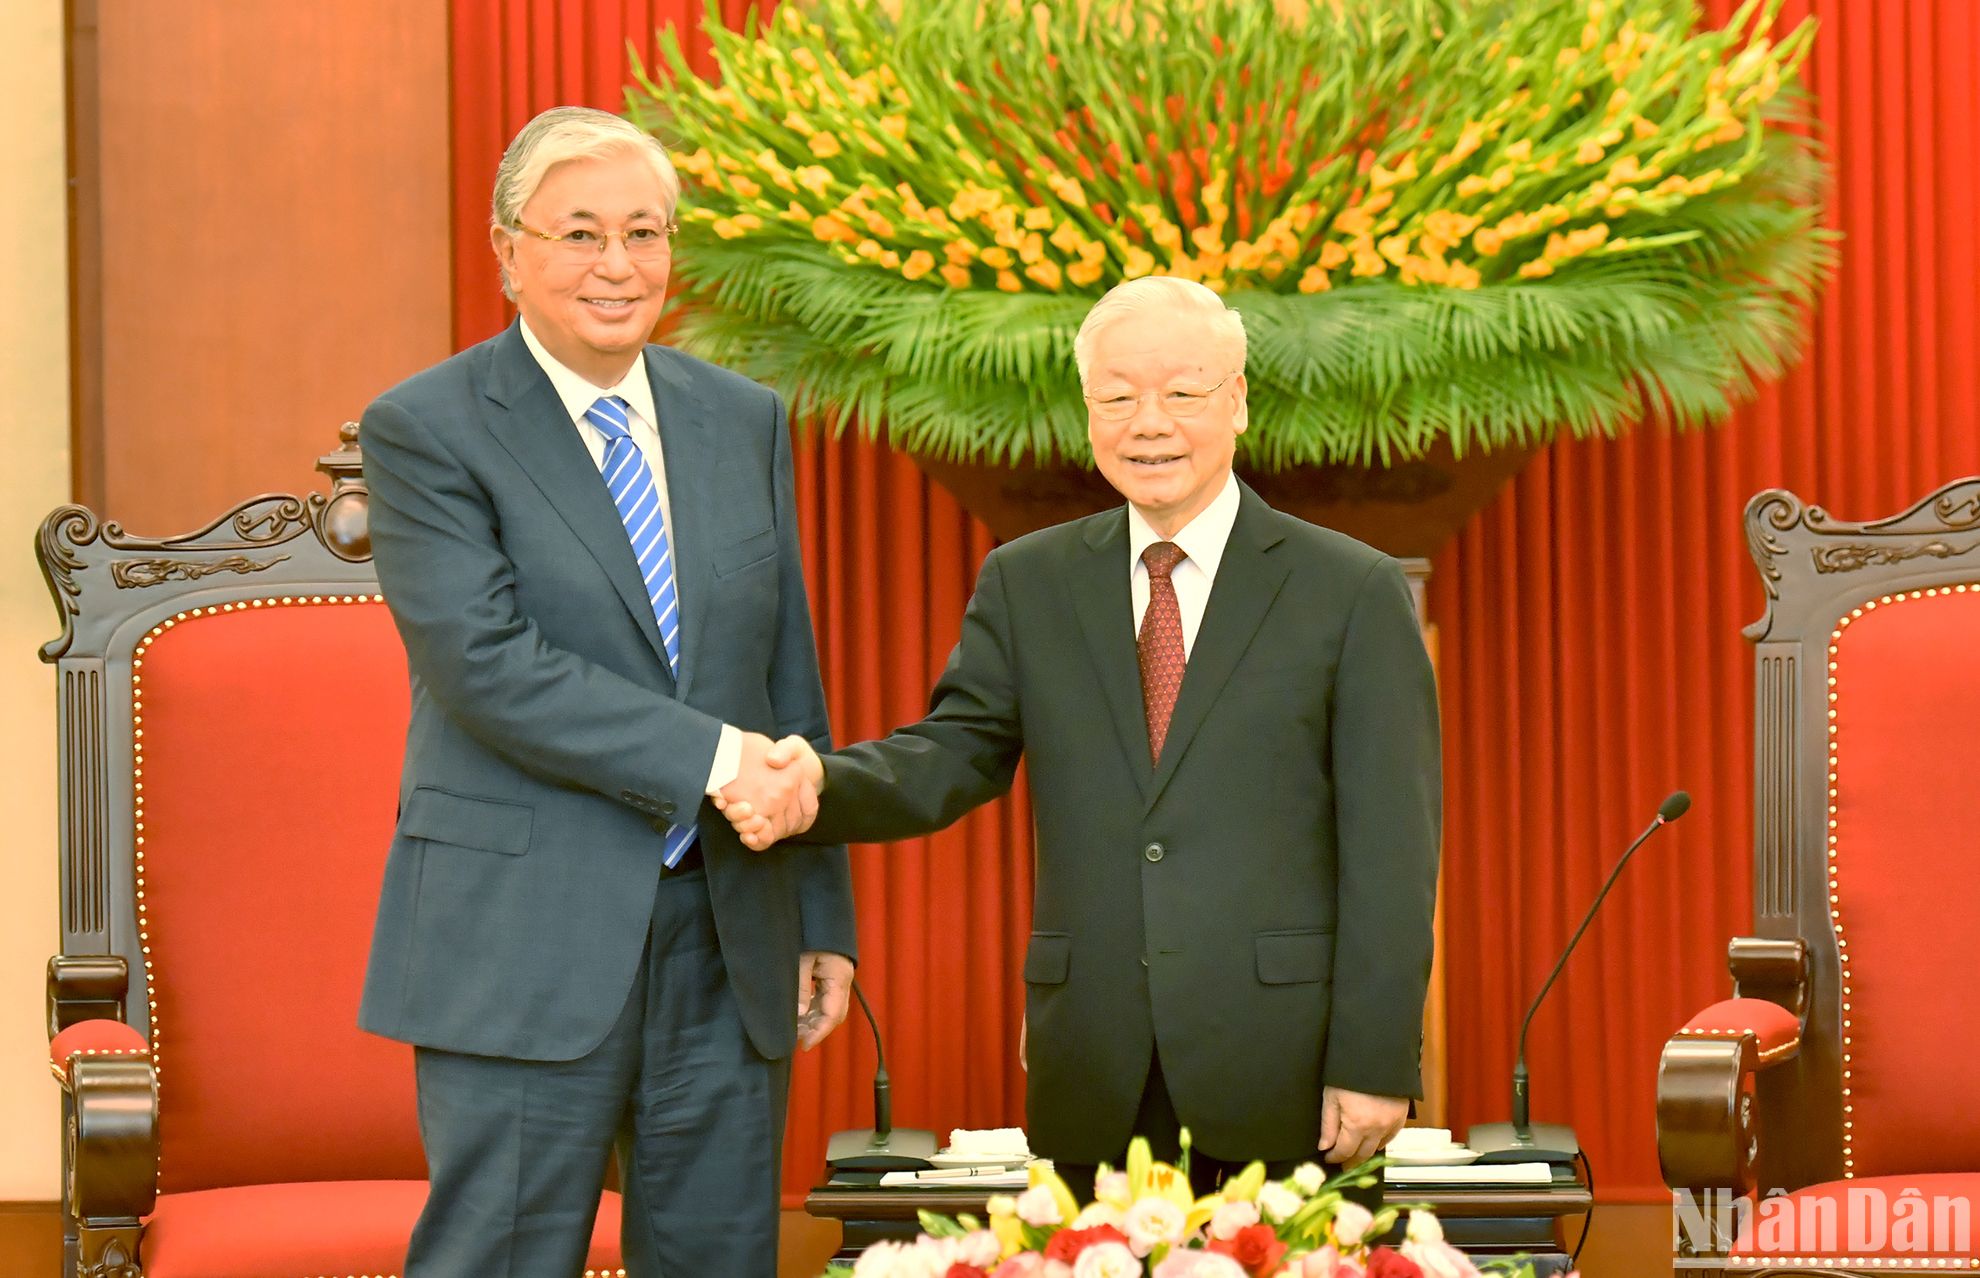 [Foto] Máximo dirigente partidista de Vietnam sostiene reunión con presidente kazajo